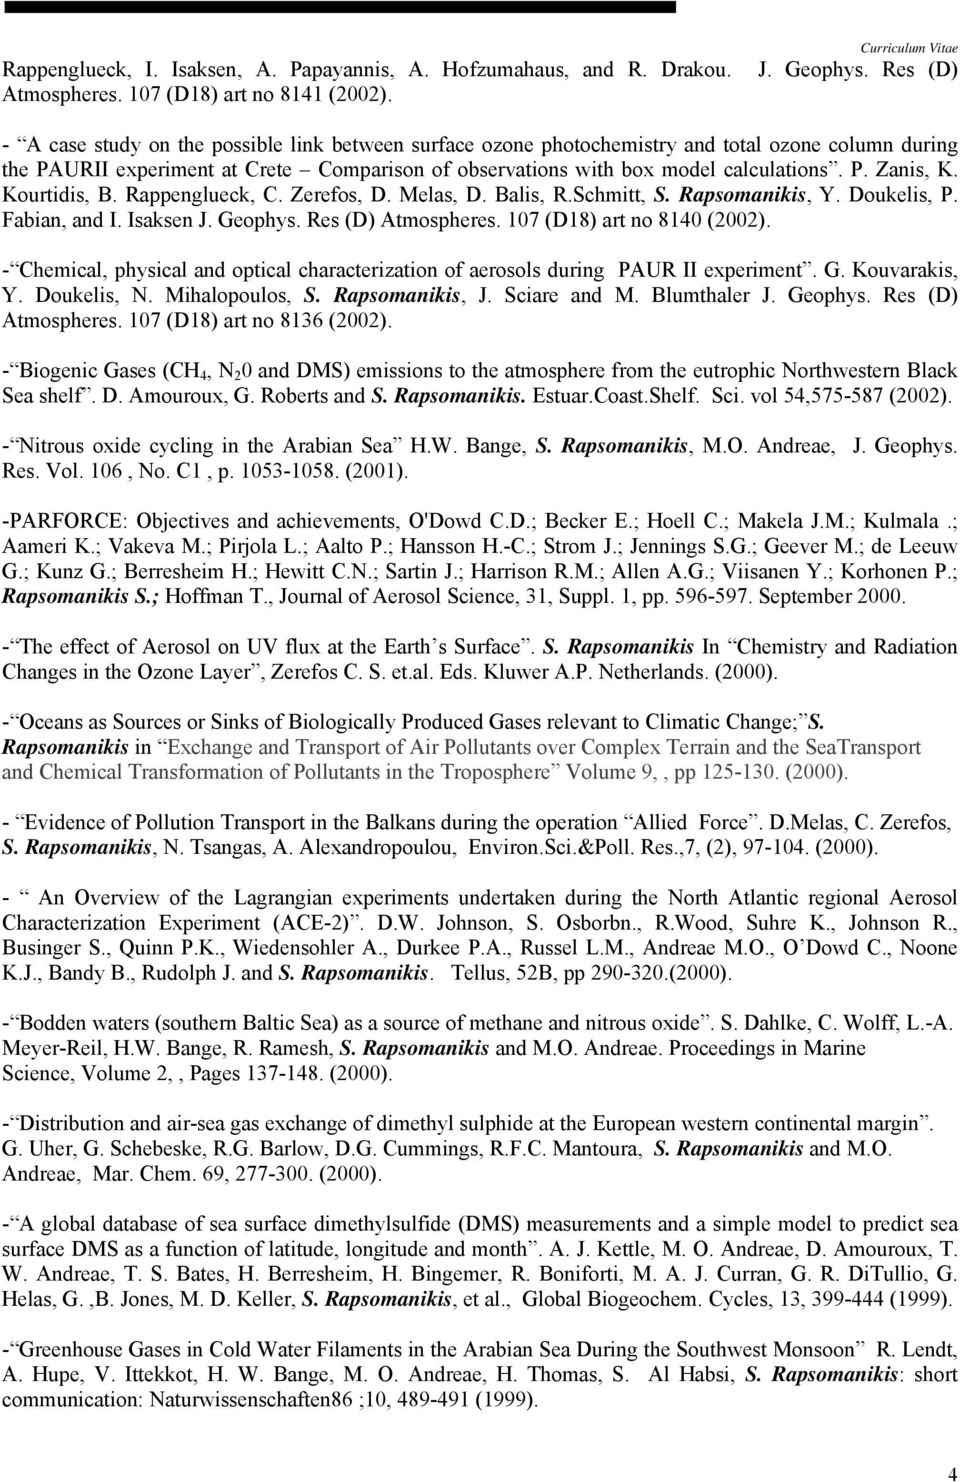 Kourtidis, B. Rappenglueck, C. Zerefos, D. Melas, D. Balis, R.Schmitt, S. Rapsomanikis, Y. Doukelis, P. Fabian, and I. Isaksen J. Geophys. Res (D) Atmospheres. 107 (D18) art no 8140 (2002).